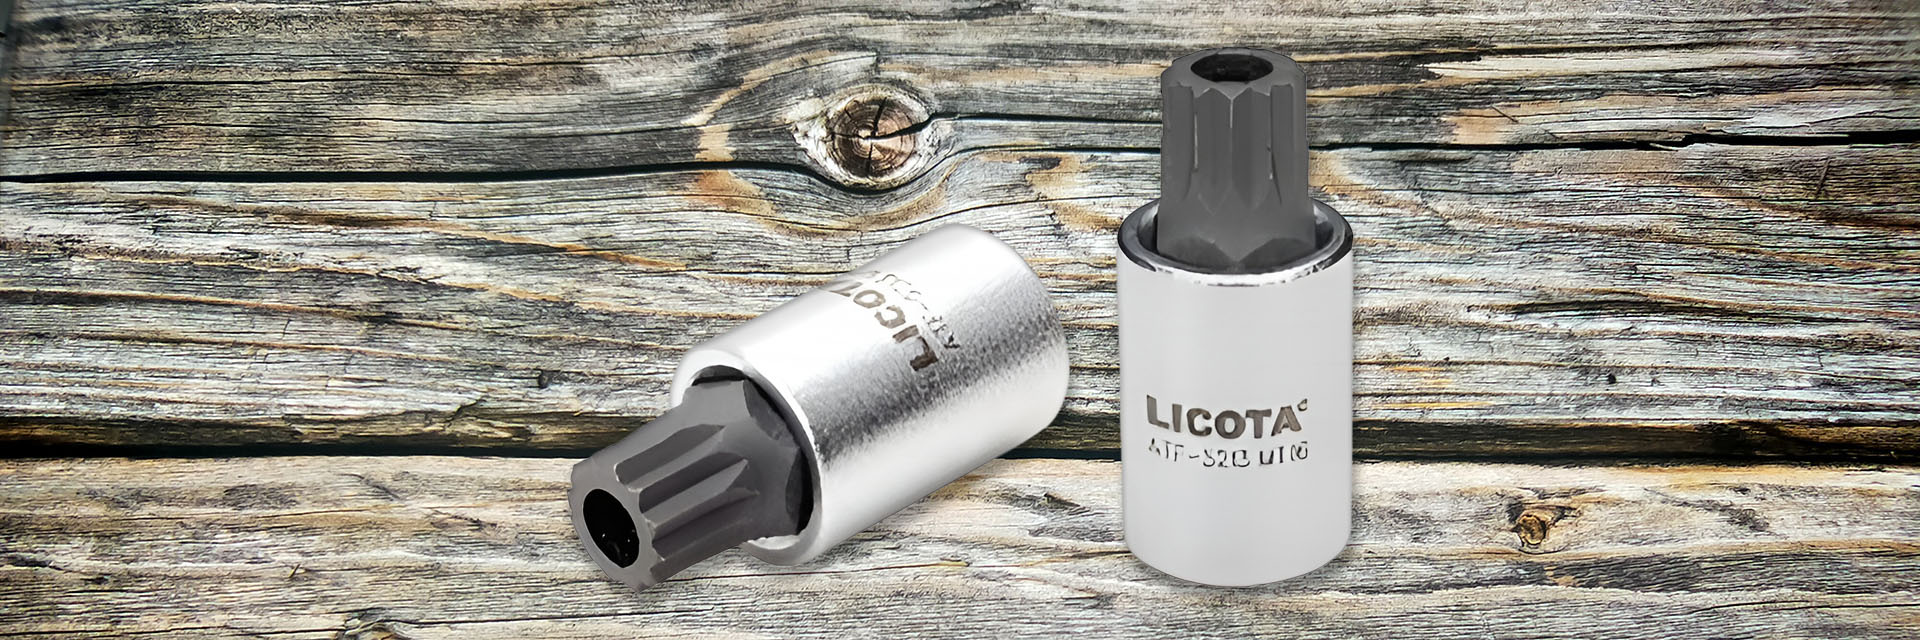 Licota bit socket - Tuýp mũi vít đặc biệt để sửa xe